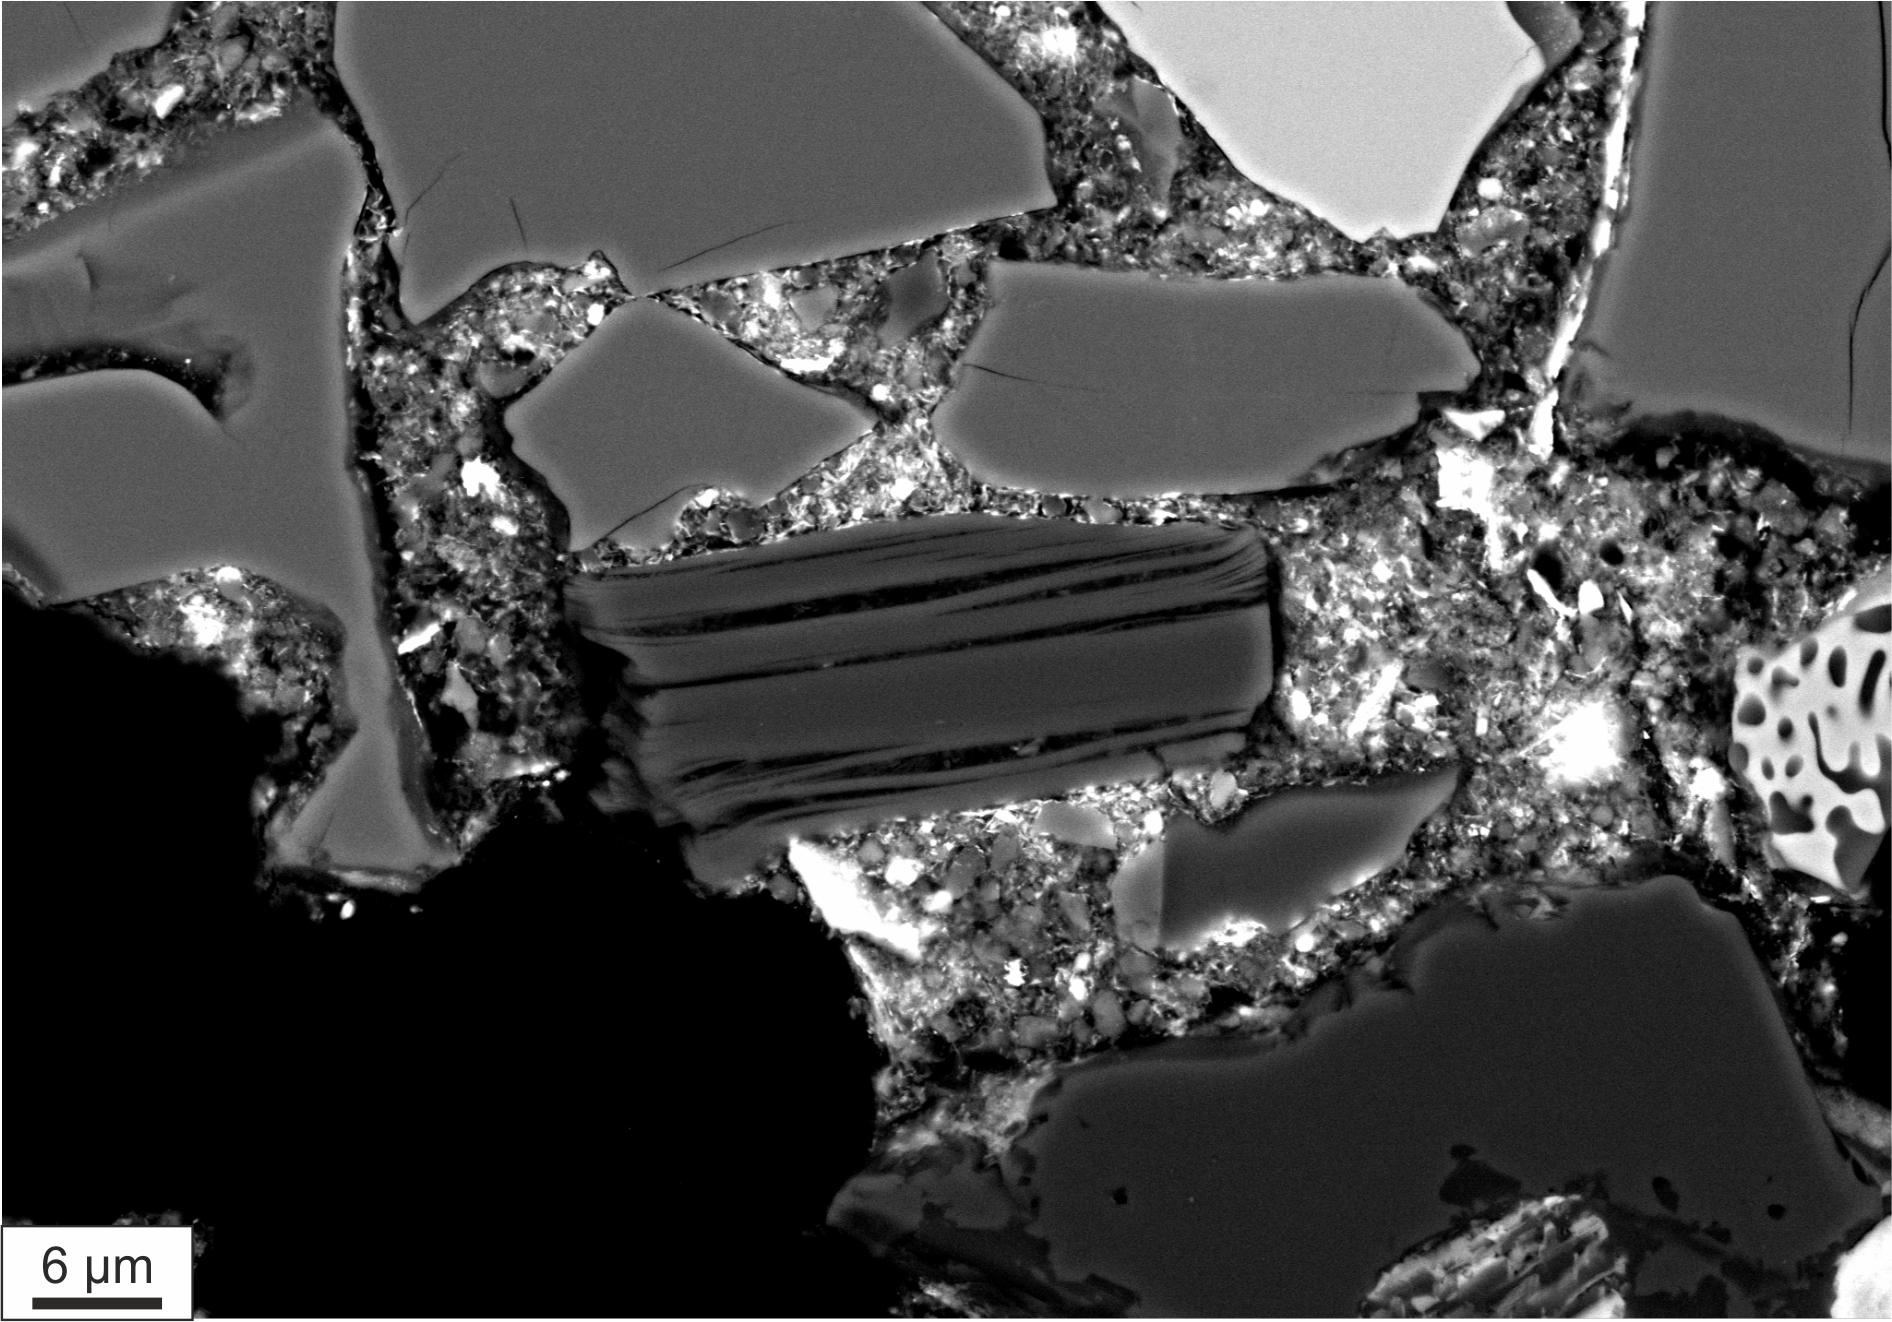 Νέα πηγή προέλευσης του νερού στη Γη – Μοναδικά ευρήματα σε μετεωρίτη από Έλληνα επιστήμονα